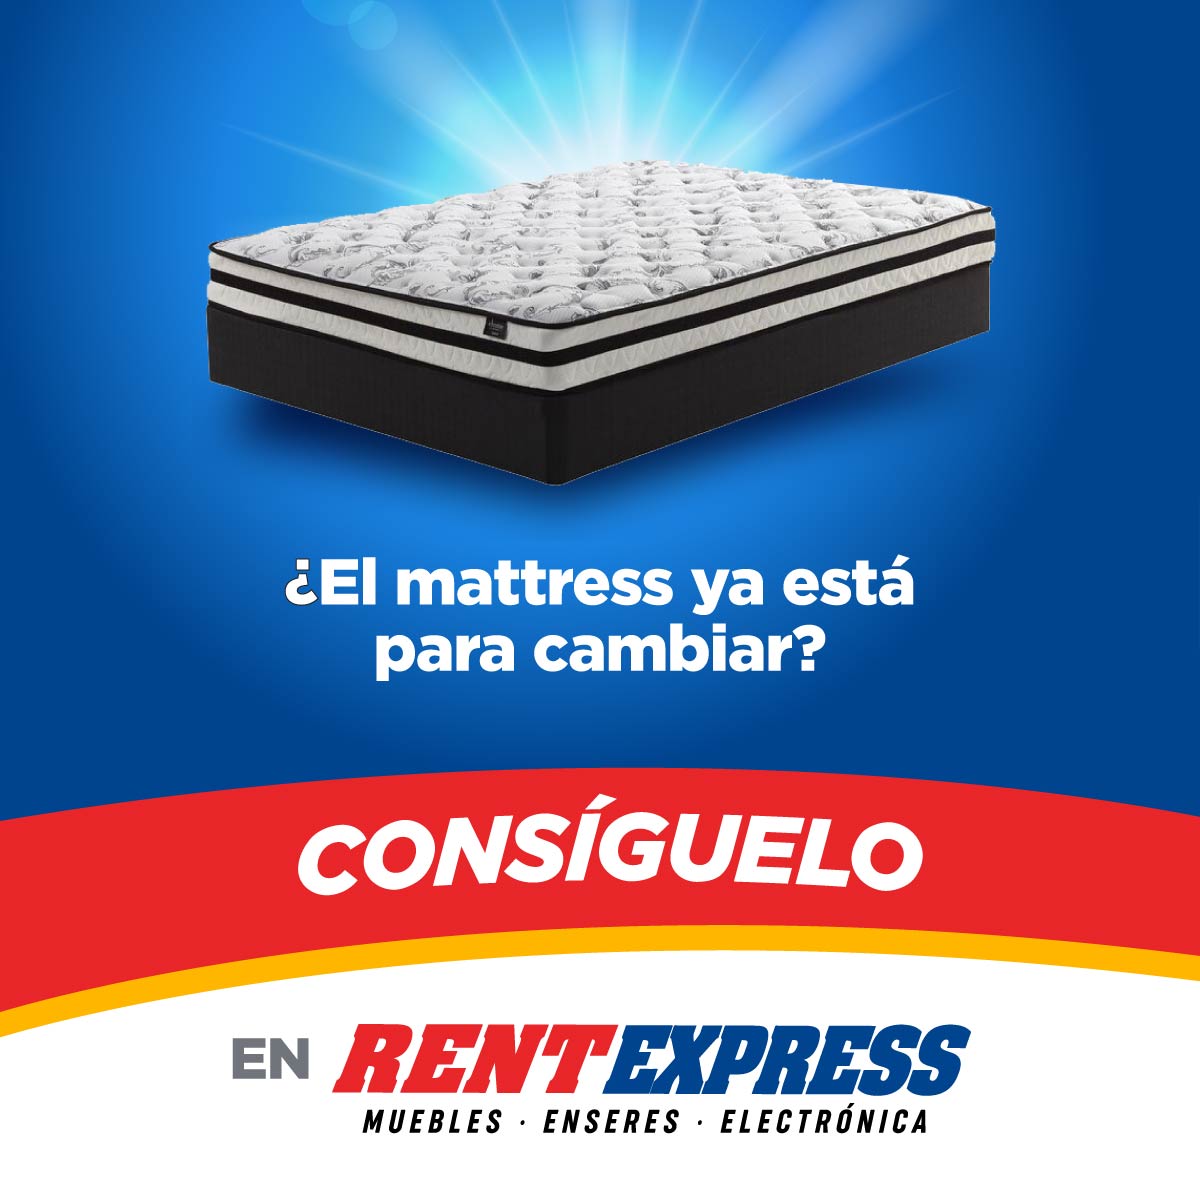 Dale un update tu mattress